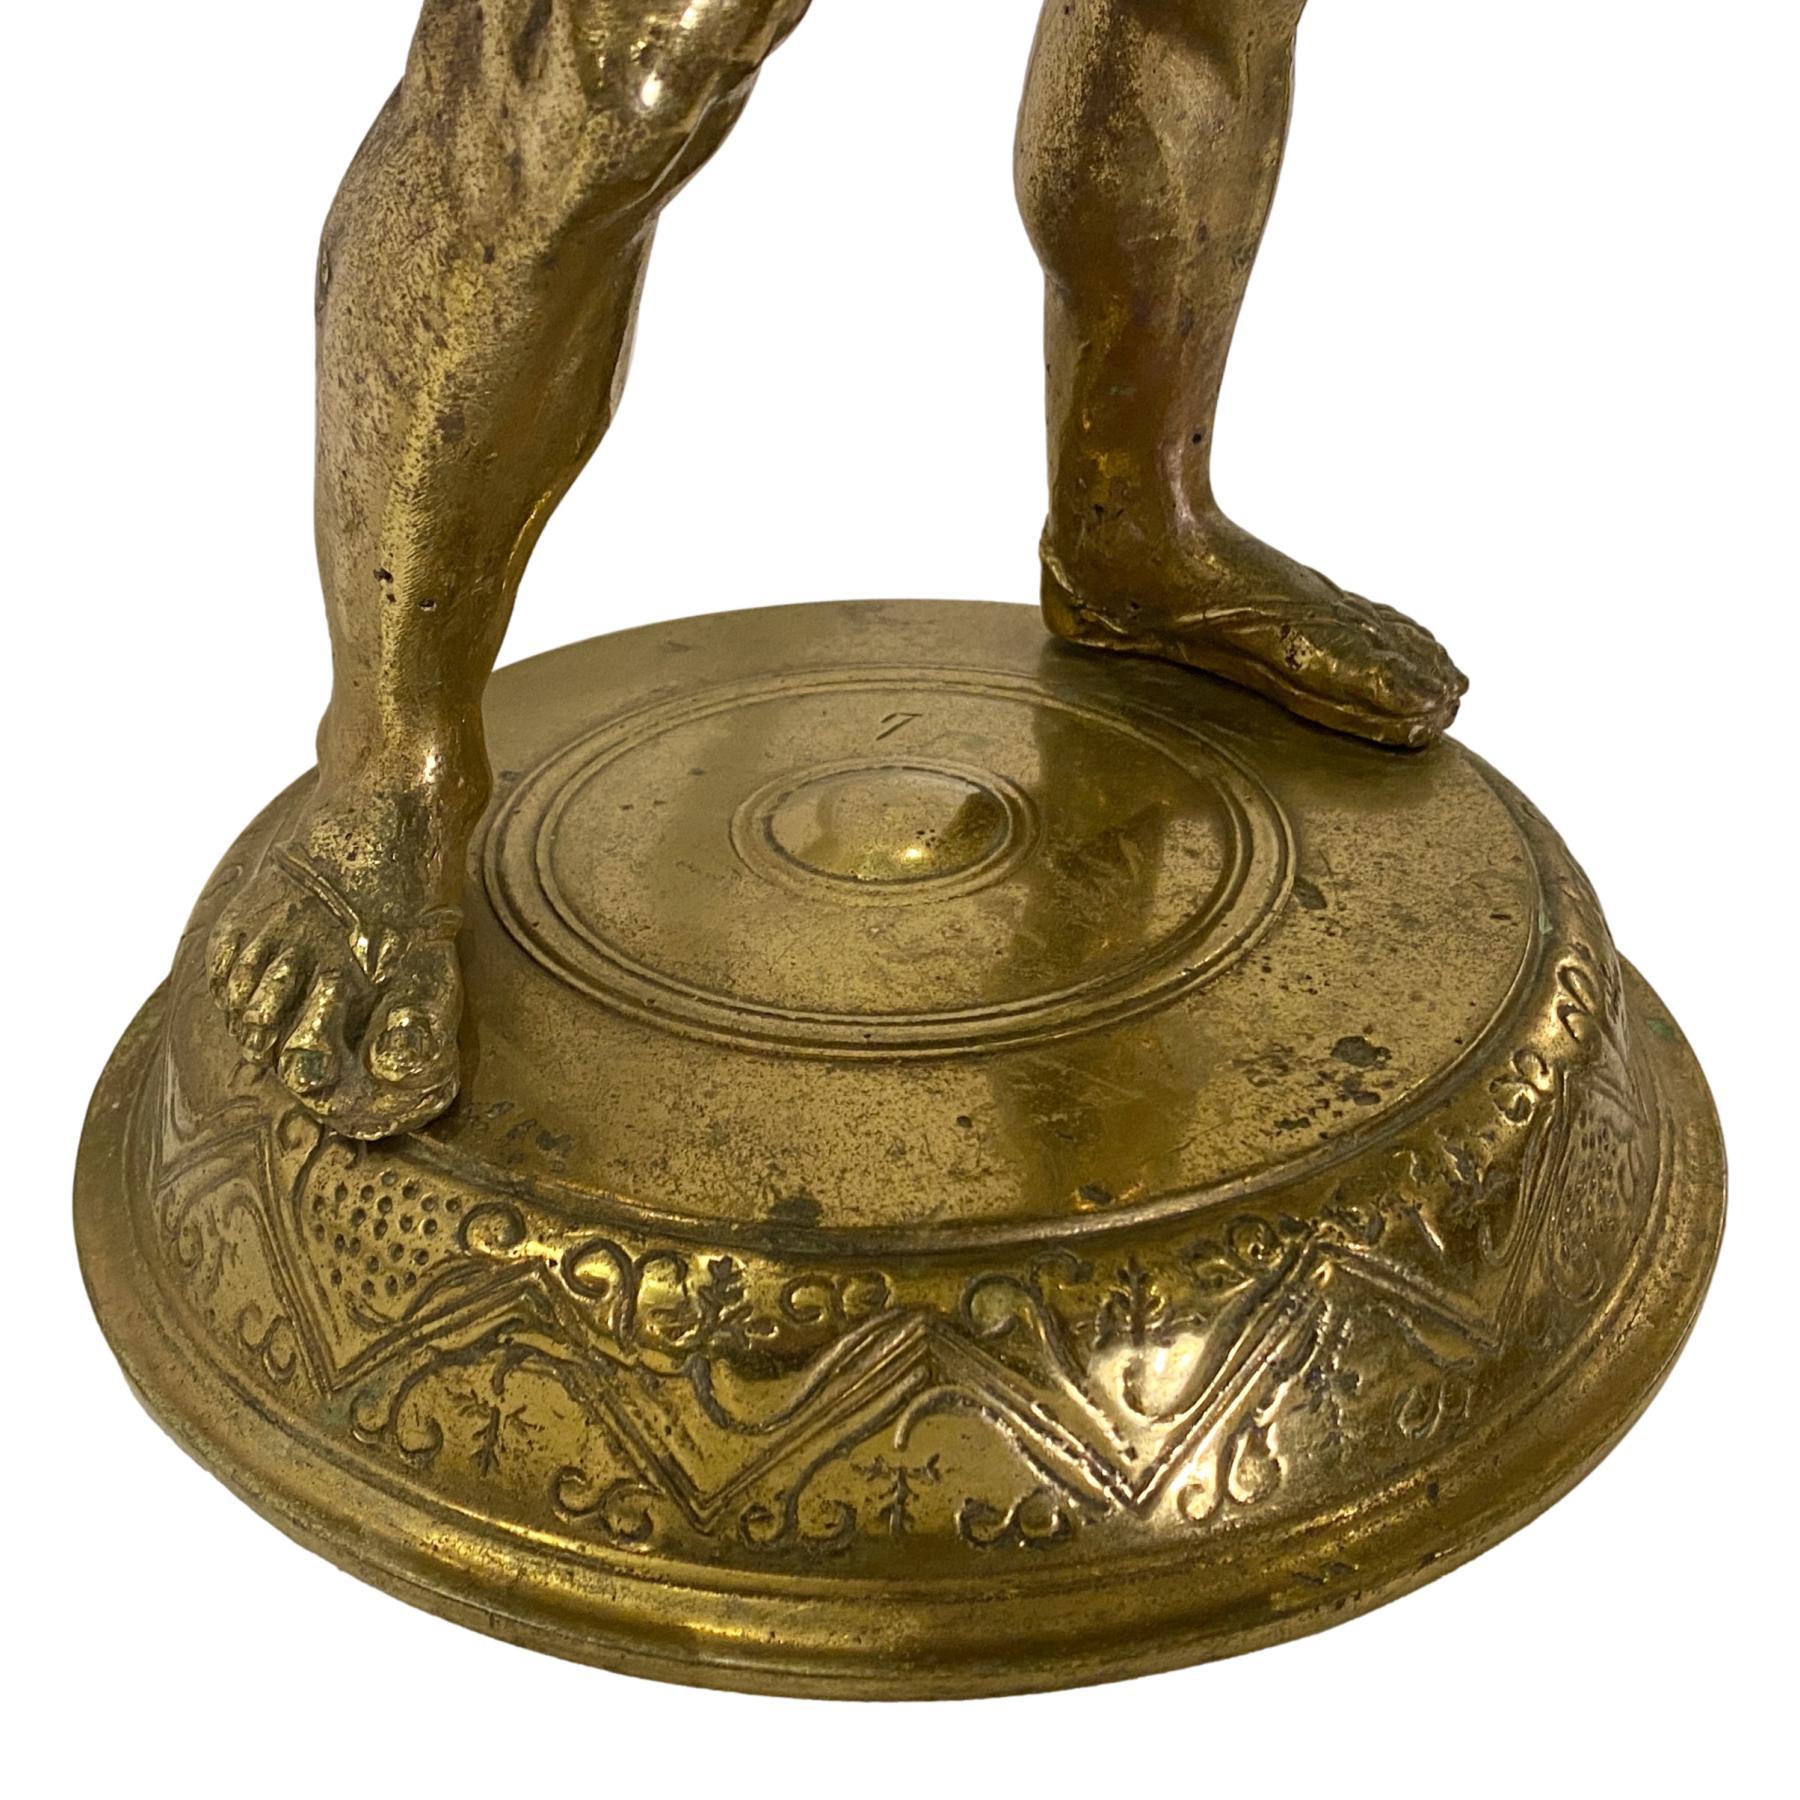 Figure en bronze coulé italienne de la fin du 19e siècle représentant Bacchus tenant un panier en bronze tressé, avec patine d'origine.

Mesures :
Hauteur 24